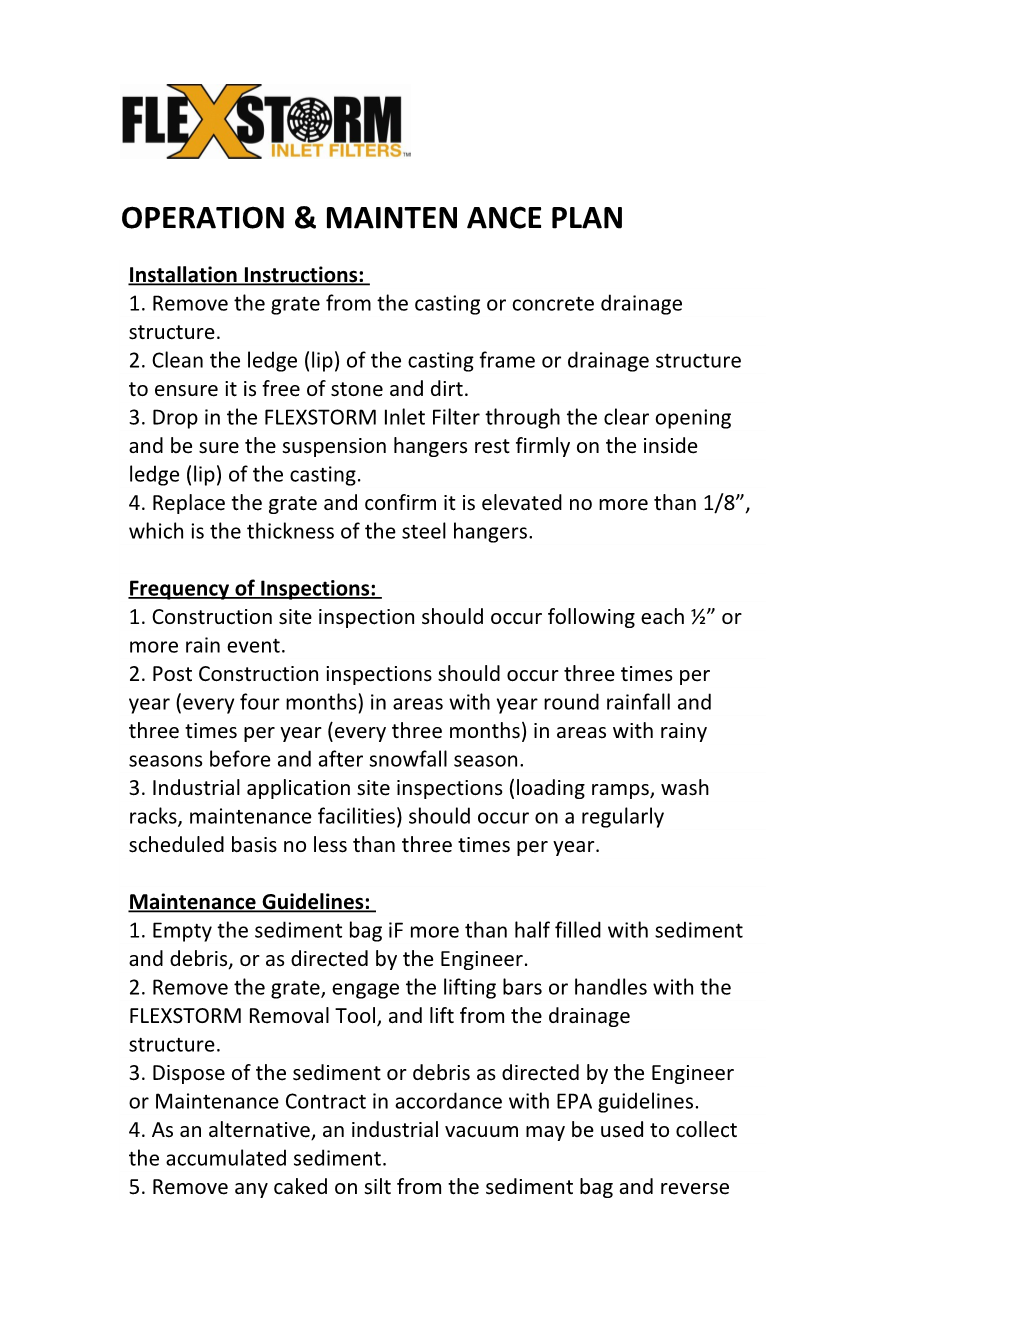 Operation & Mainten Ance Plan